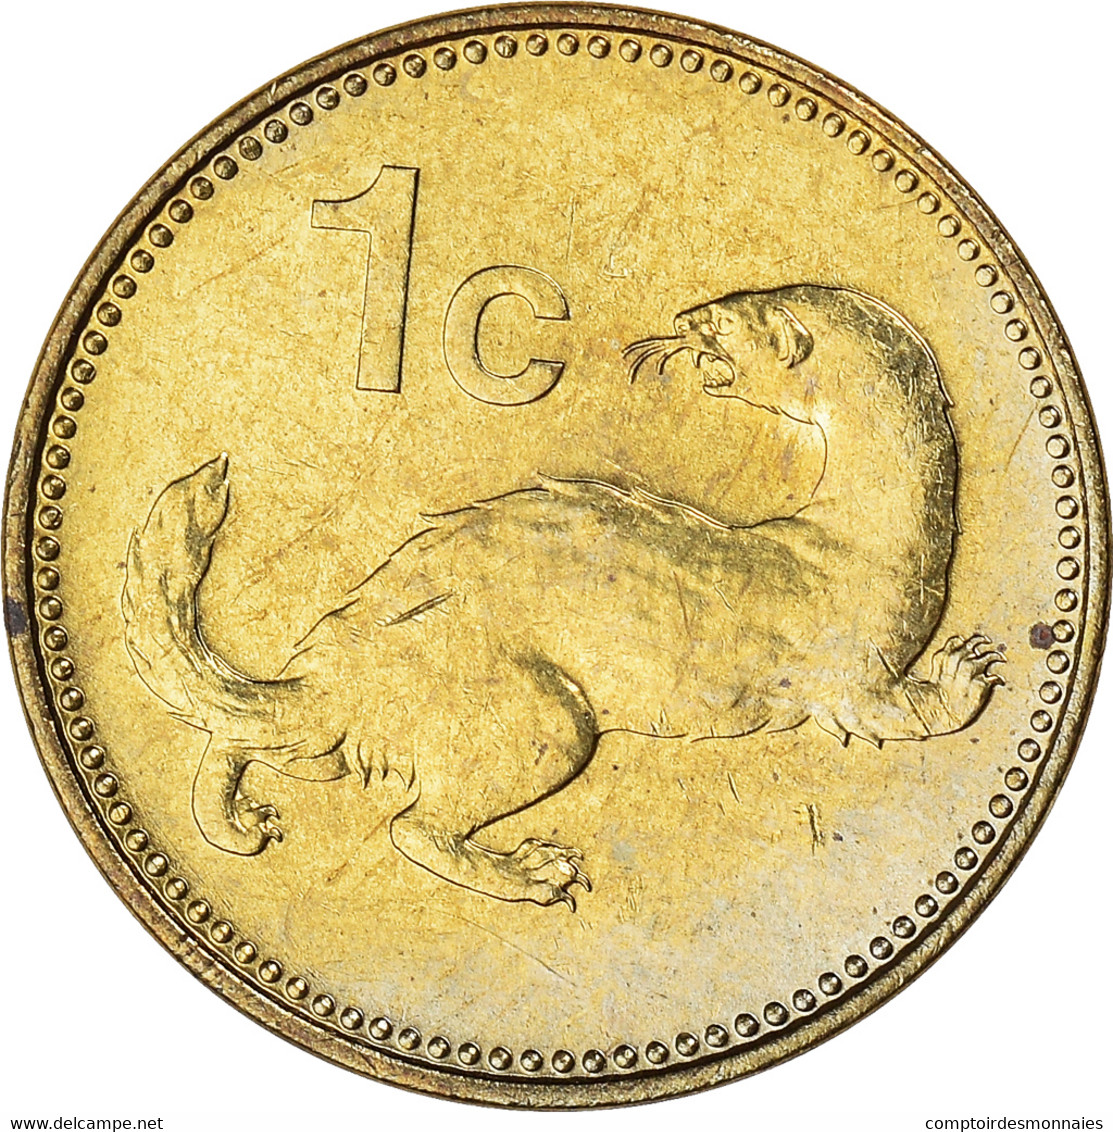 Monnaie, Malte, Cent, 1986, SUP+, Nickel-Cuivre, KM:78 - Malte (Ordre De)